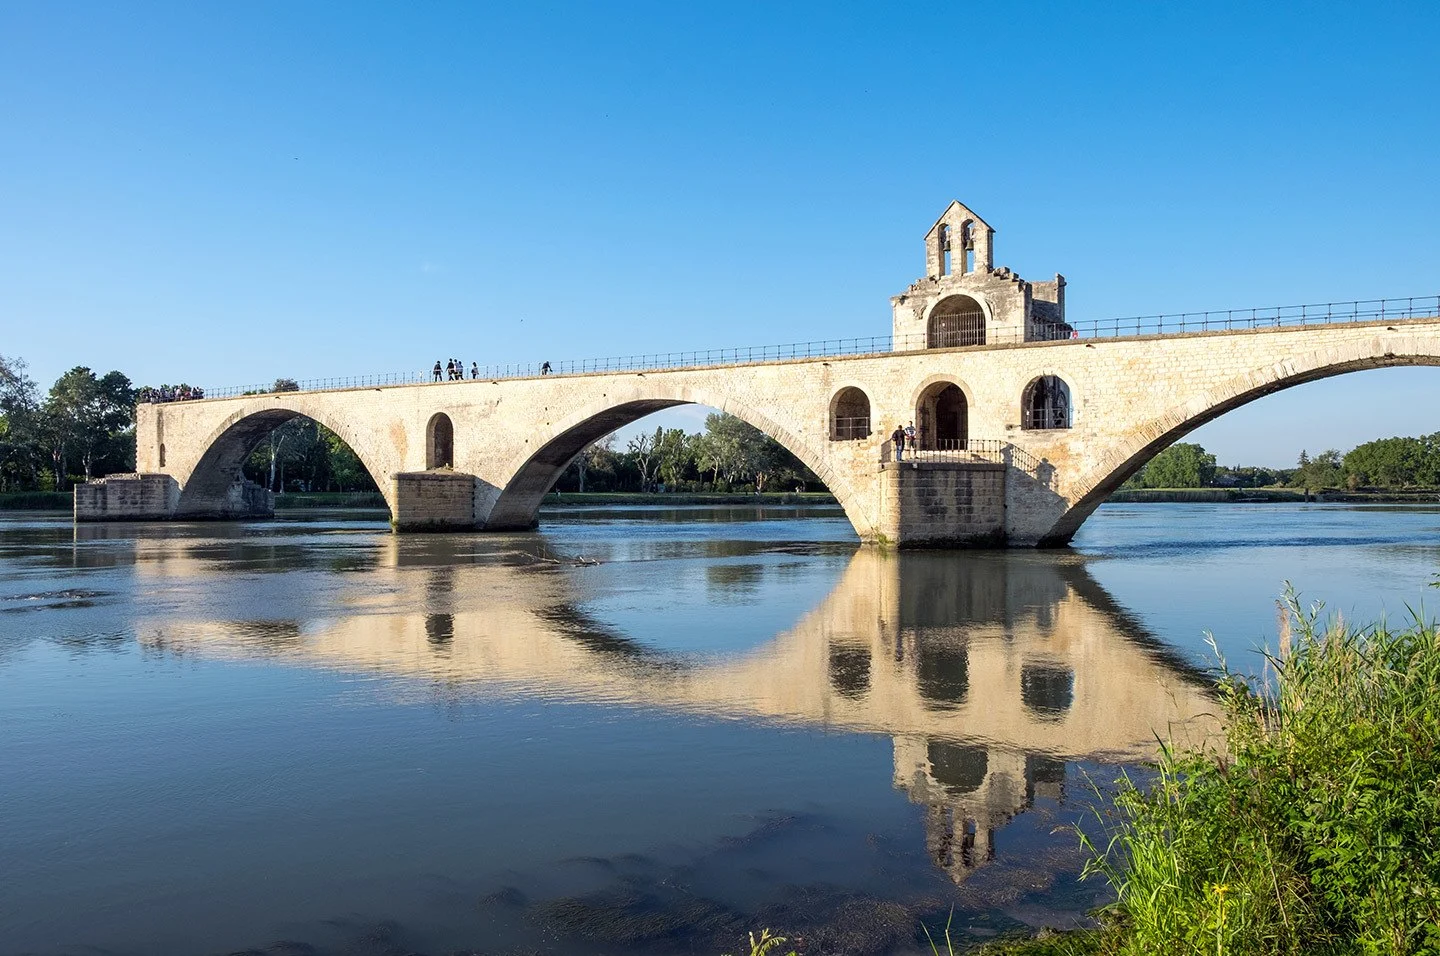 The Pont d'Avignon or Pont St-Bénezet, ruined bridge in Avignon